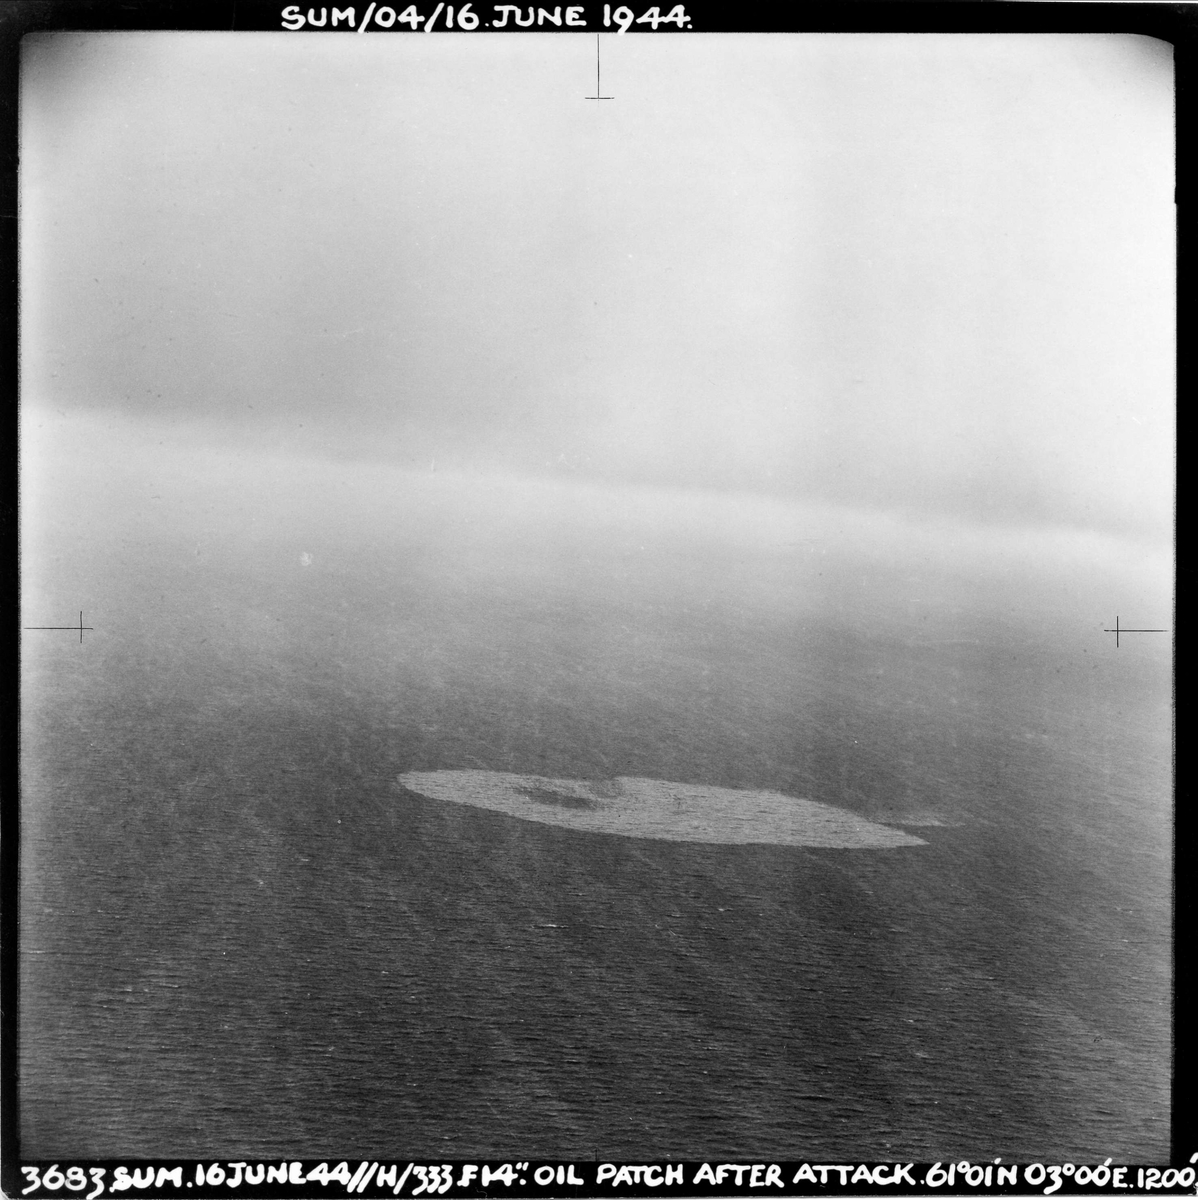 En Mosquito fra 333 skvadronen angriper en tysk ubåt vest for Sognefjorden, 16. juni 1944. Pilot på flyet er major E. U. Johansen. Et oljeflak fra ubåten er det eneste som er igjen etter angrepet.